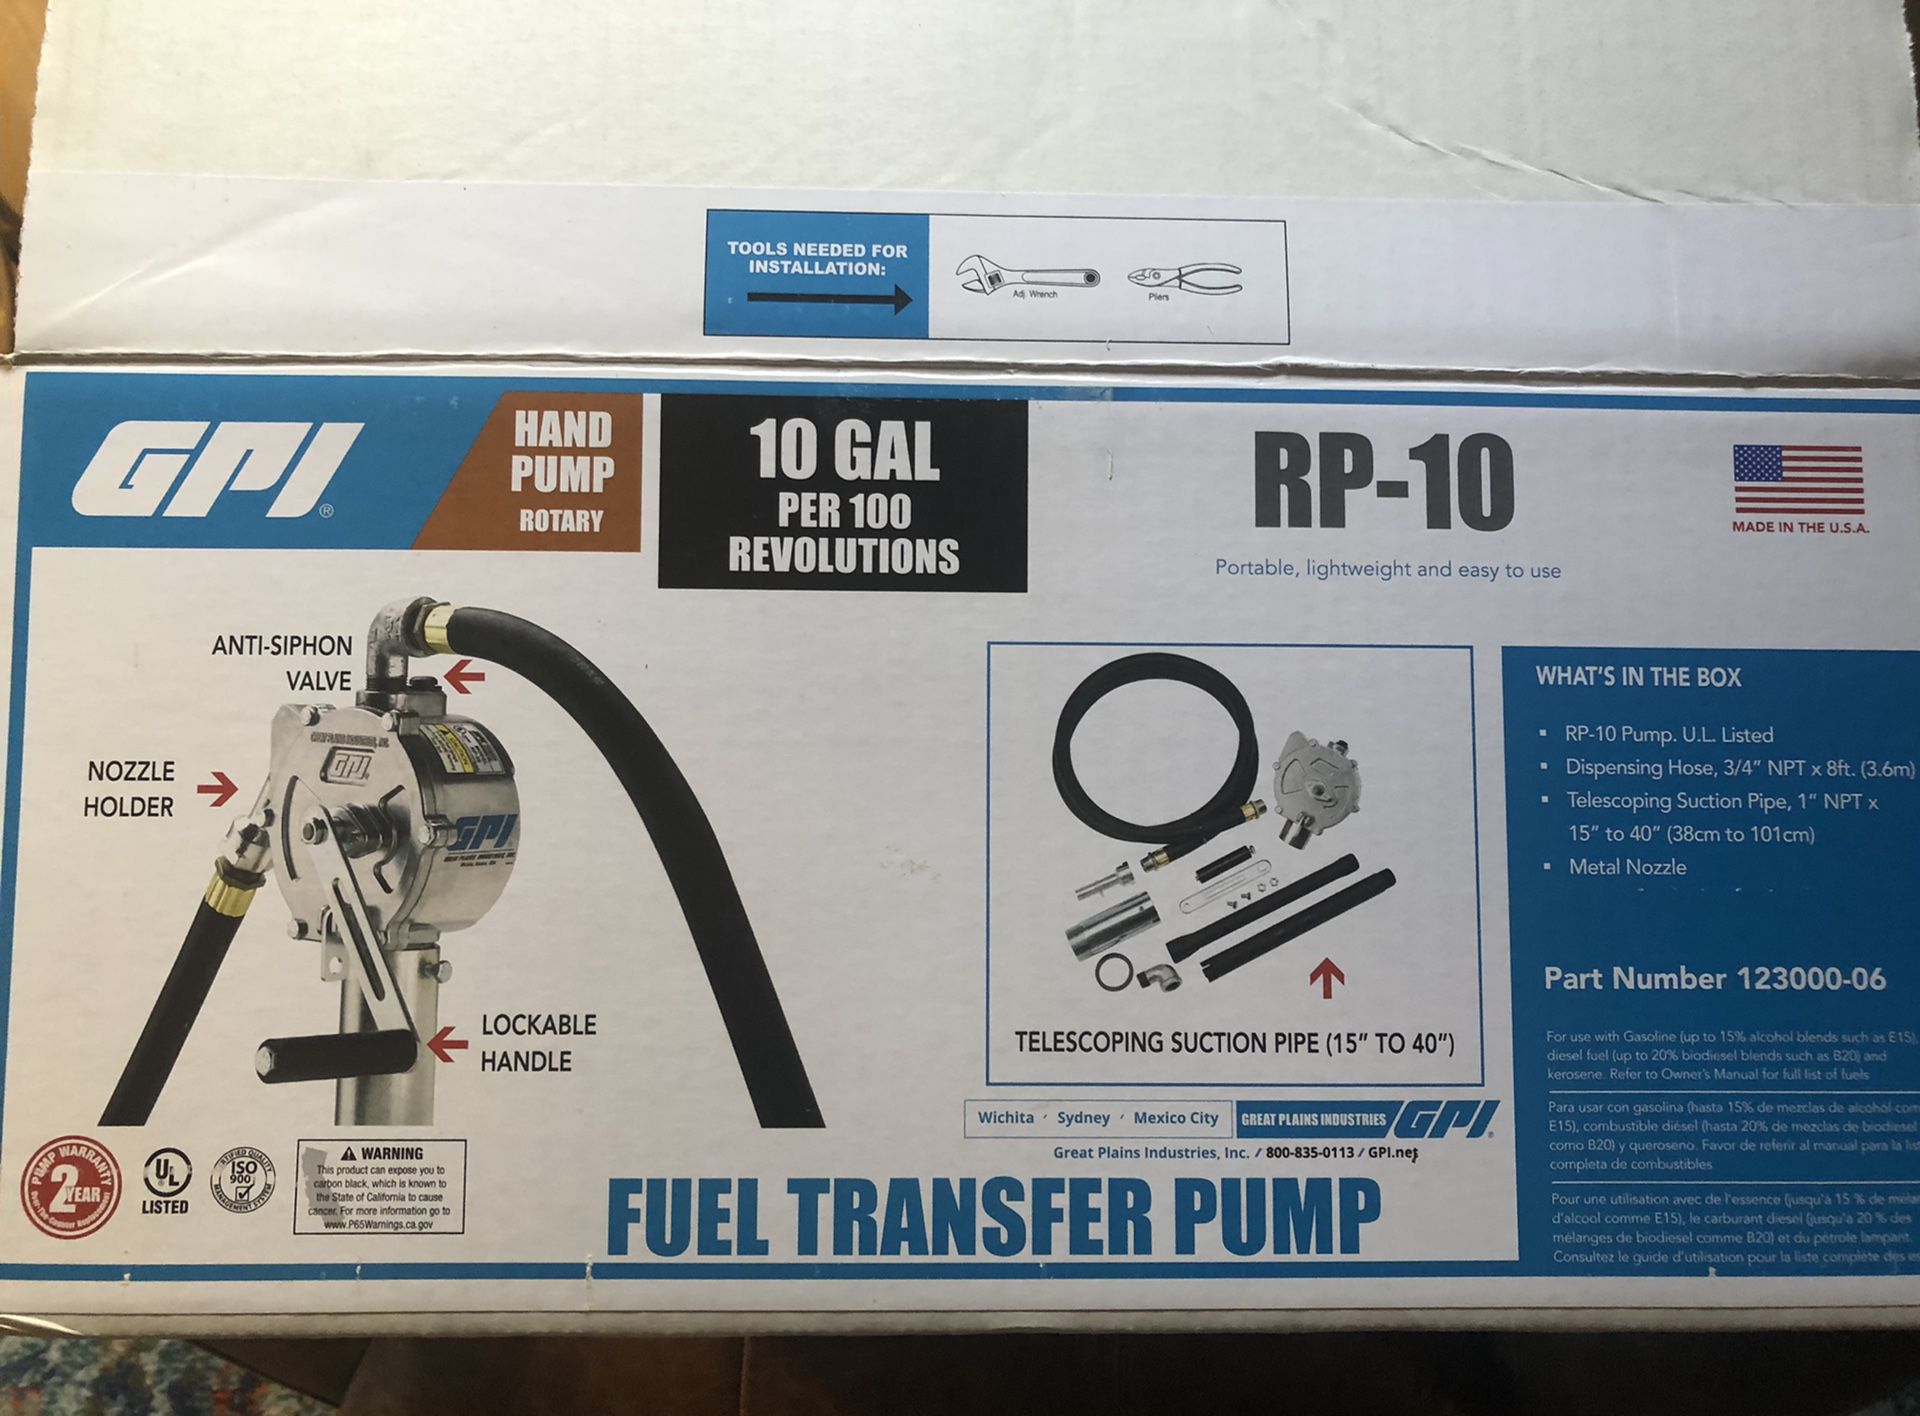 Fuel transfer pump.